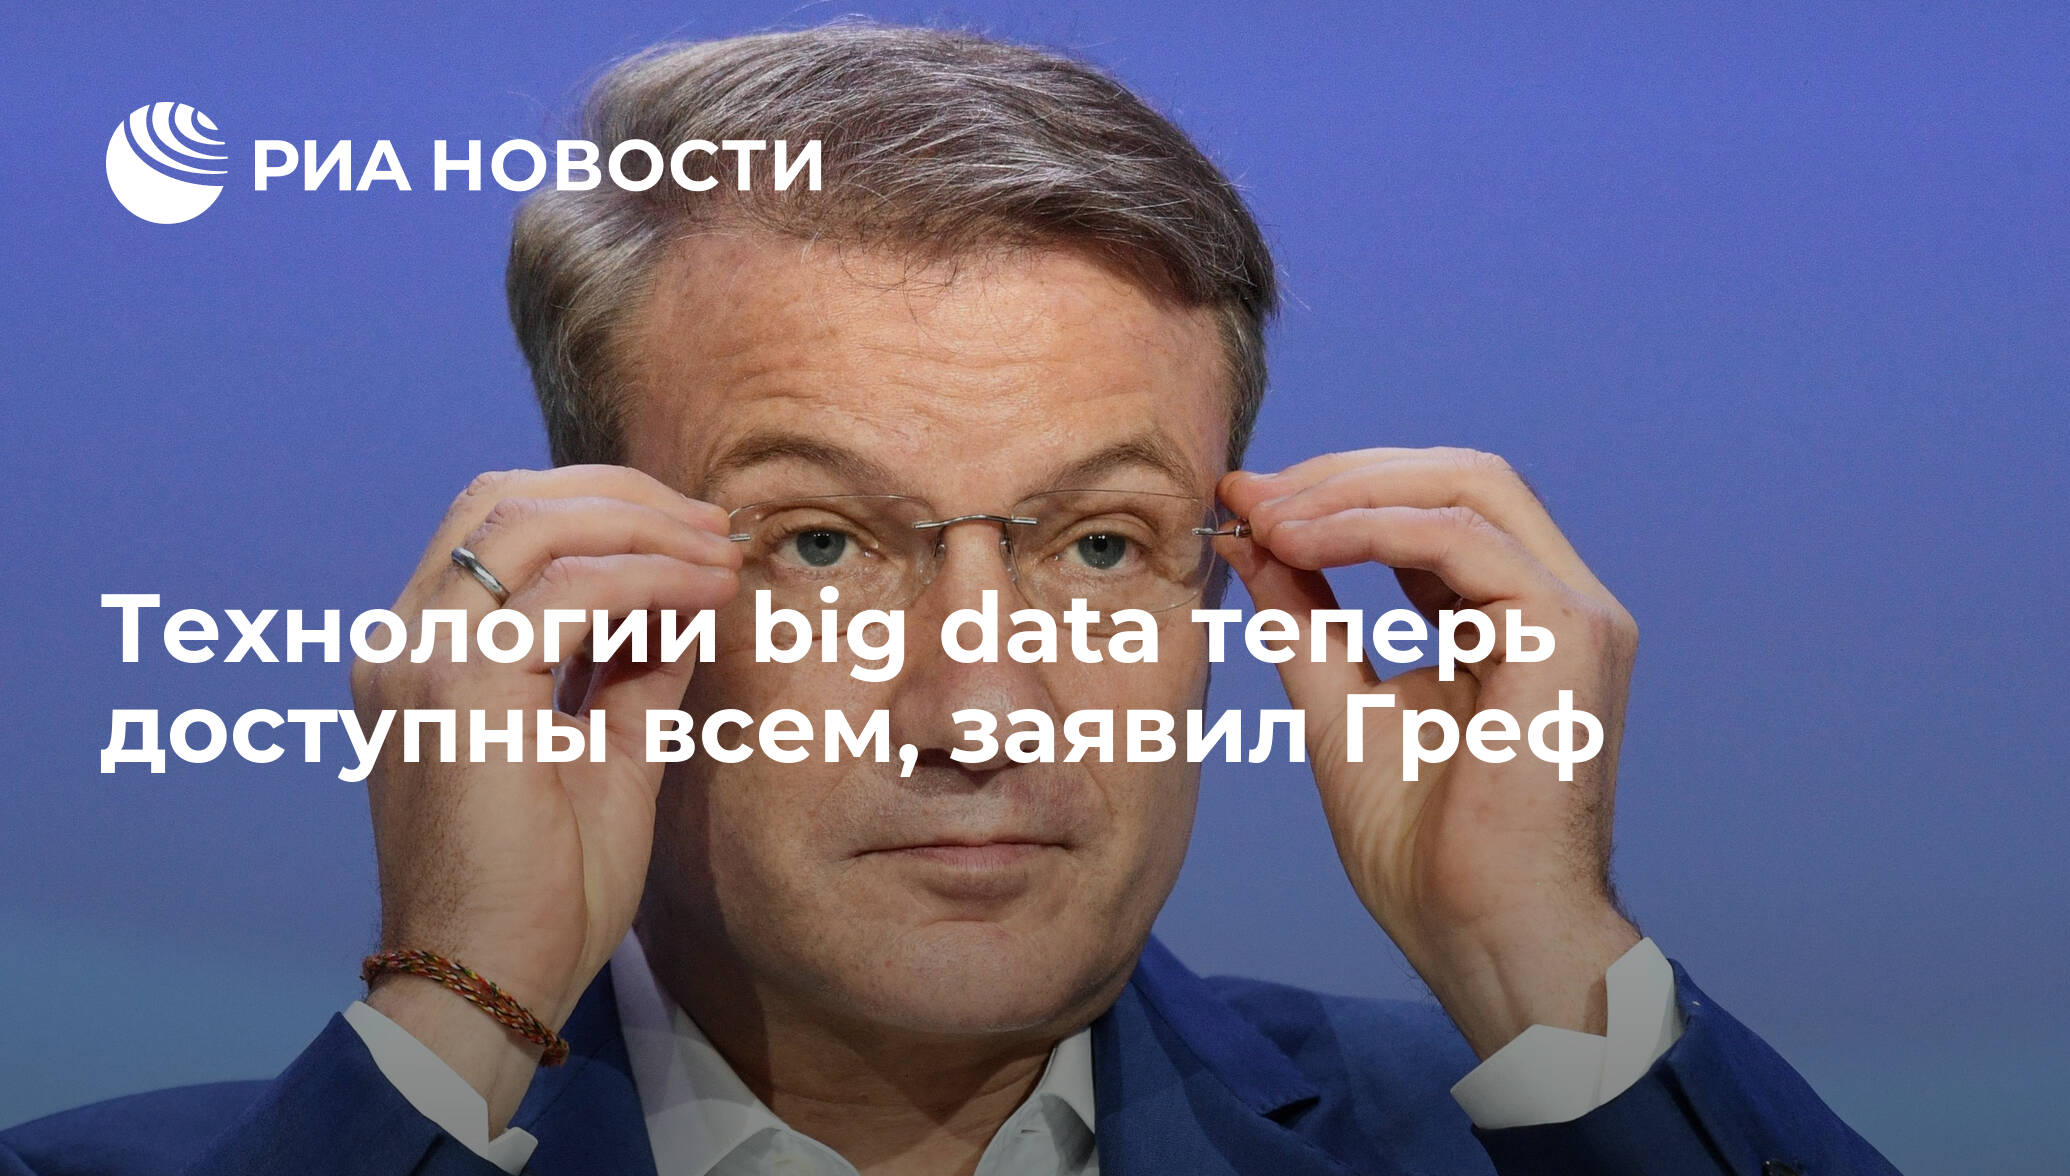 Технологии big data теперь доступны всем, заявил Греф - РИА Новости, 03.03.2020